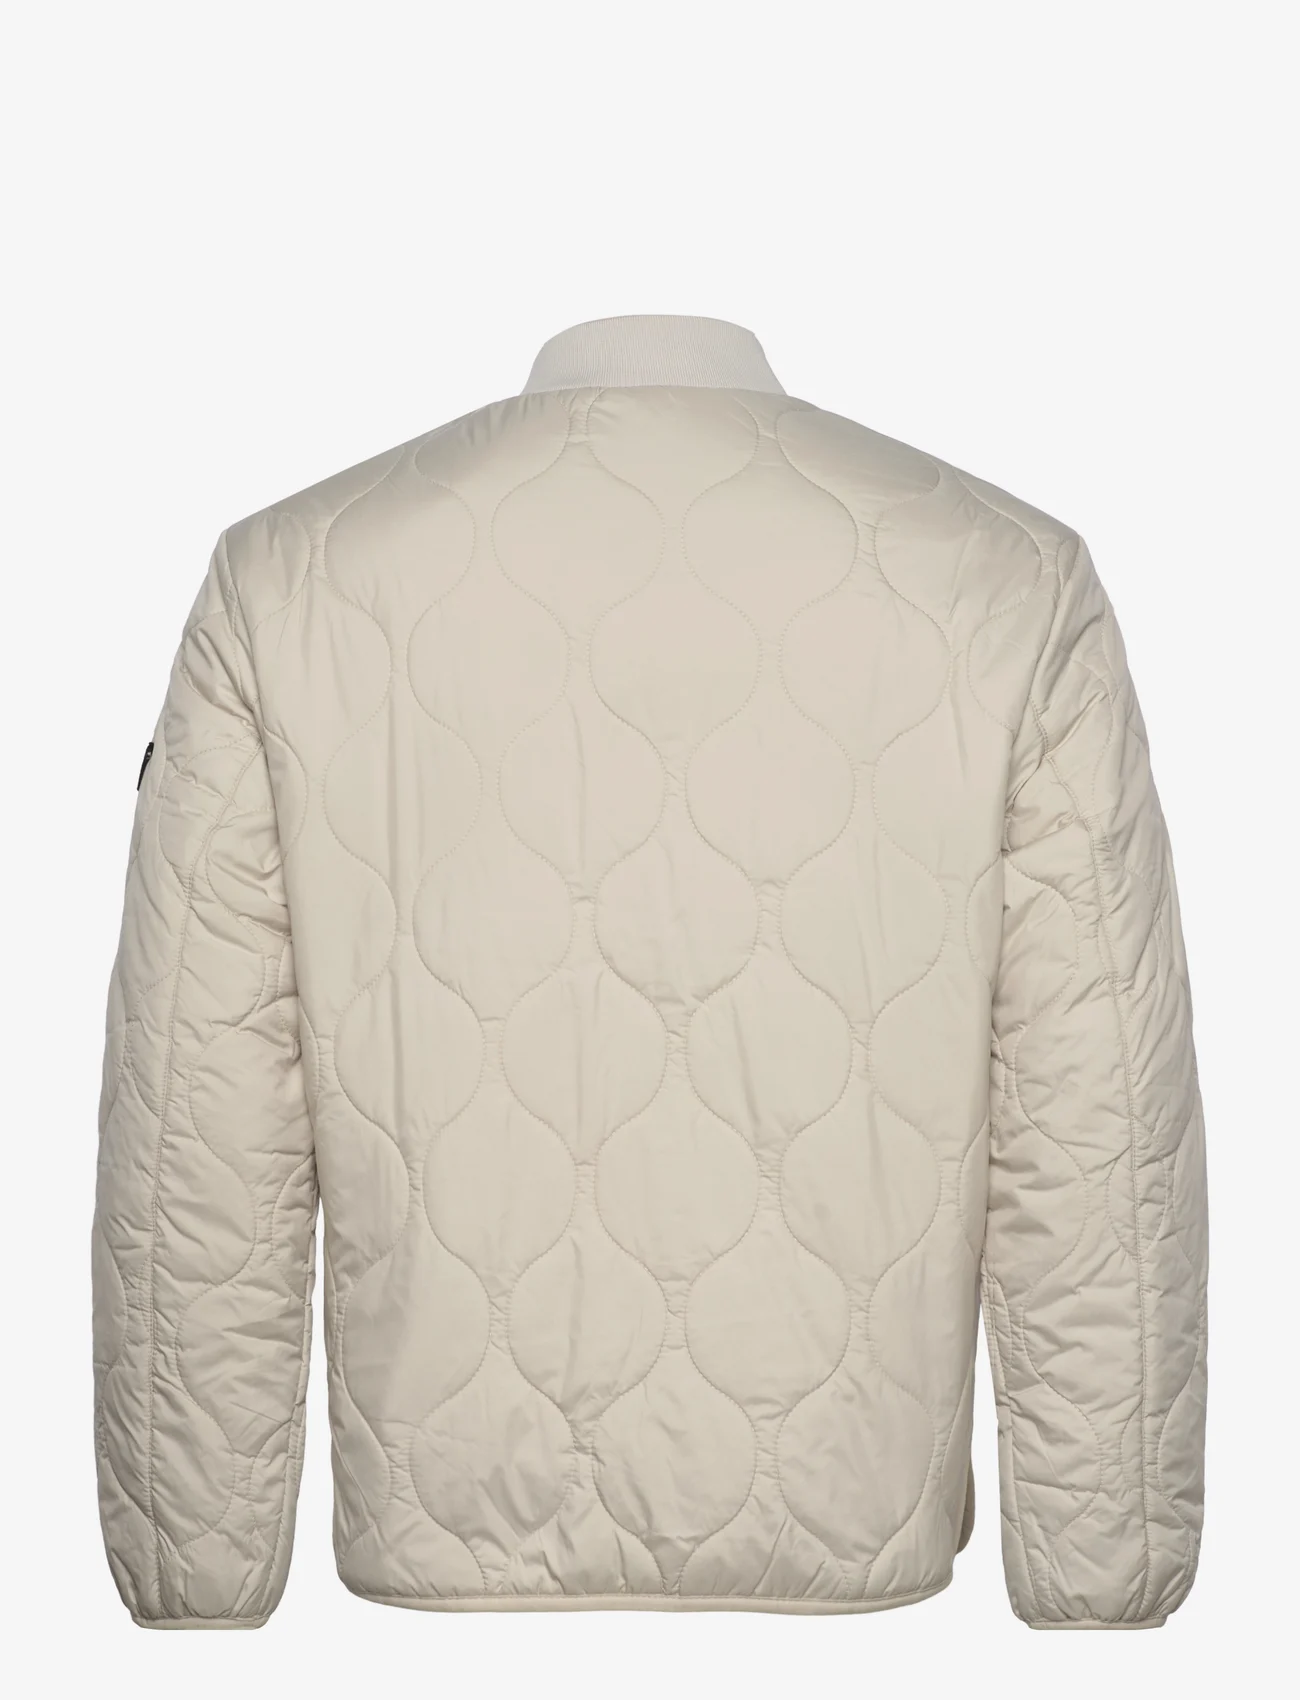 Tom Tailor - relaxed liner jacket - winterjacken - beige alfalfa - 1